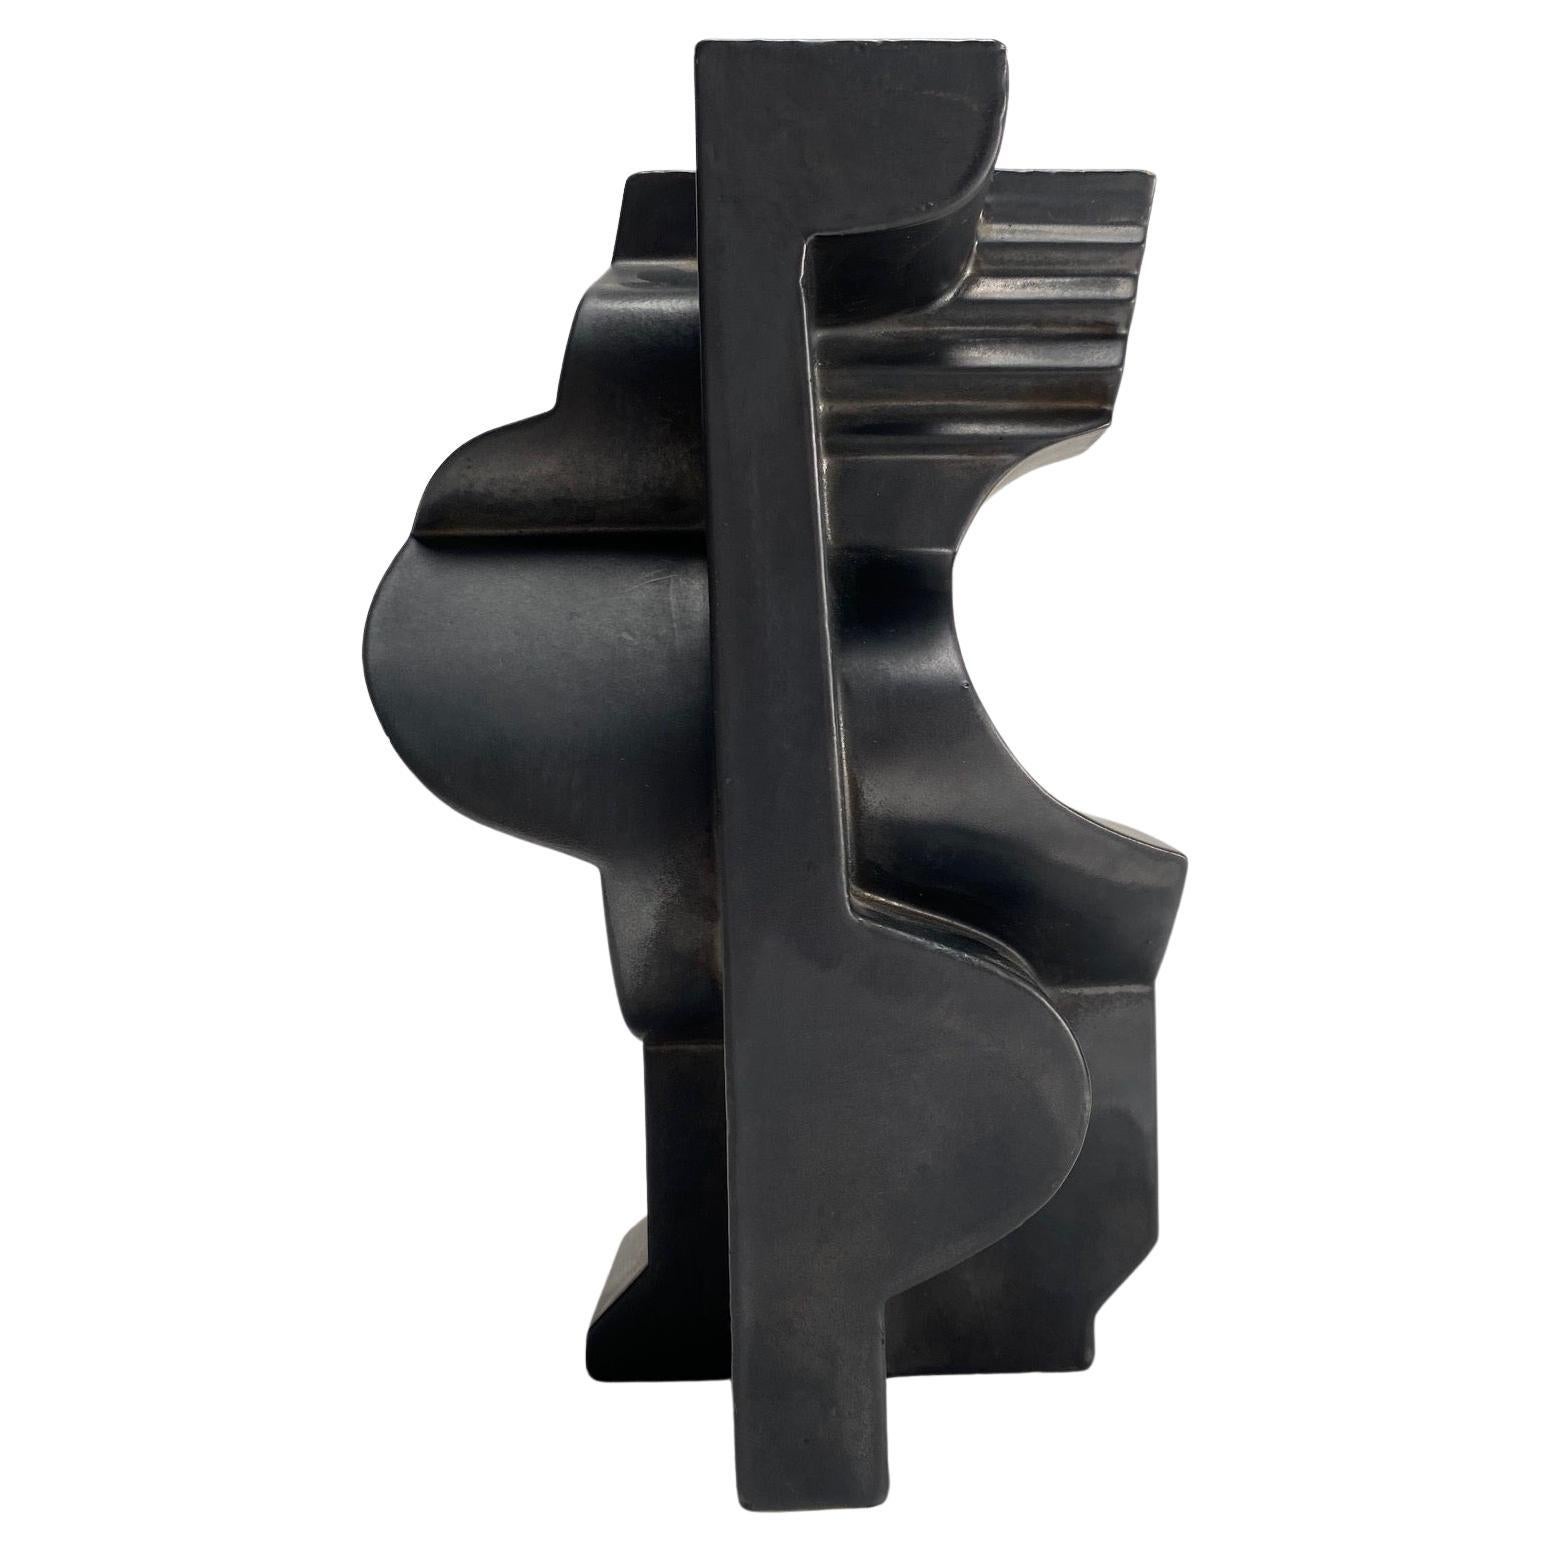 Nino Caruso ( Tripoli 1928 - Rome 2017 )
Sculpture abstraite en céramique émaillée noire. 1974, signée et datée sous la base.

Céramiste, sculpteur et designer italien, Nino Caruso a été l'un des protagonistes de la vie artistique et créative